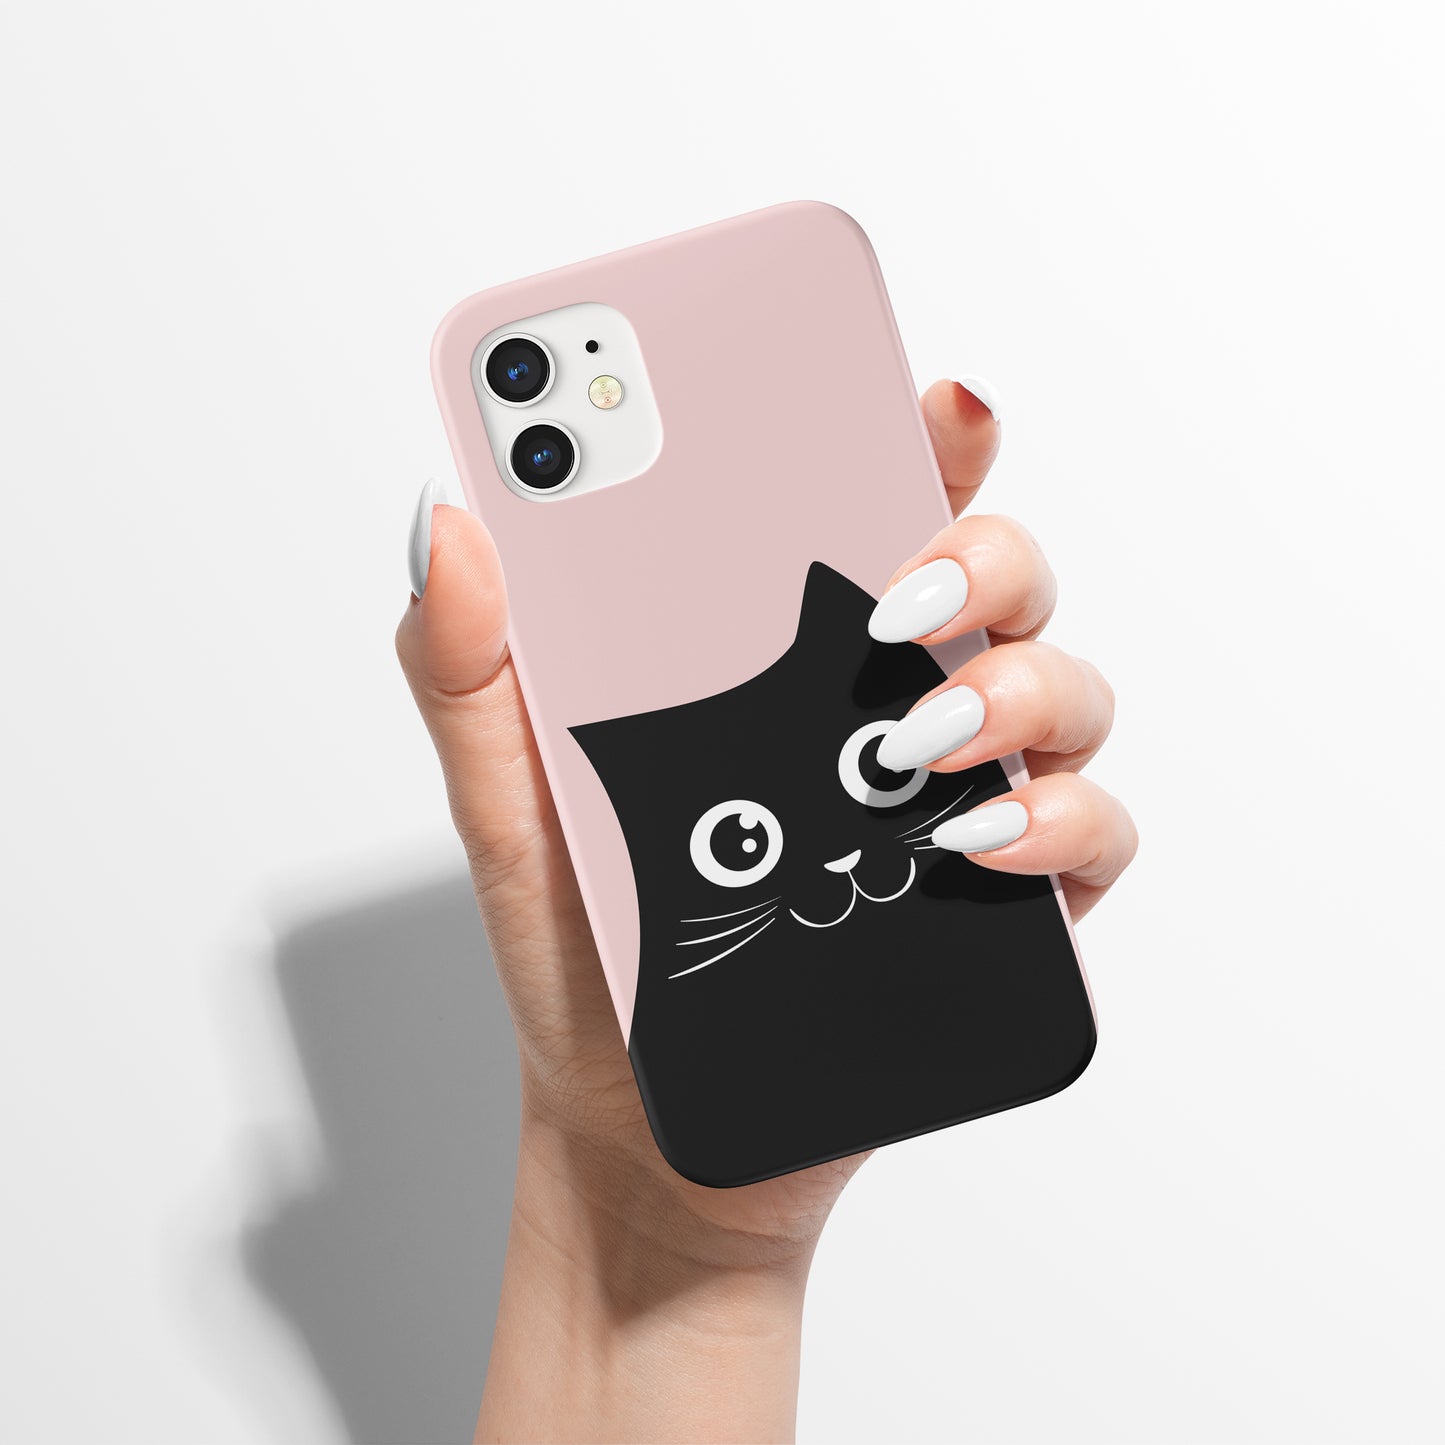 Black Cute Cat Cartoon iPhone Case